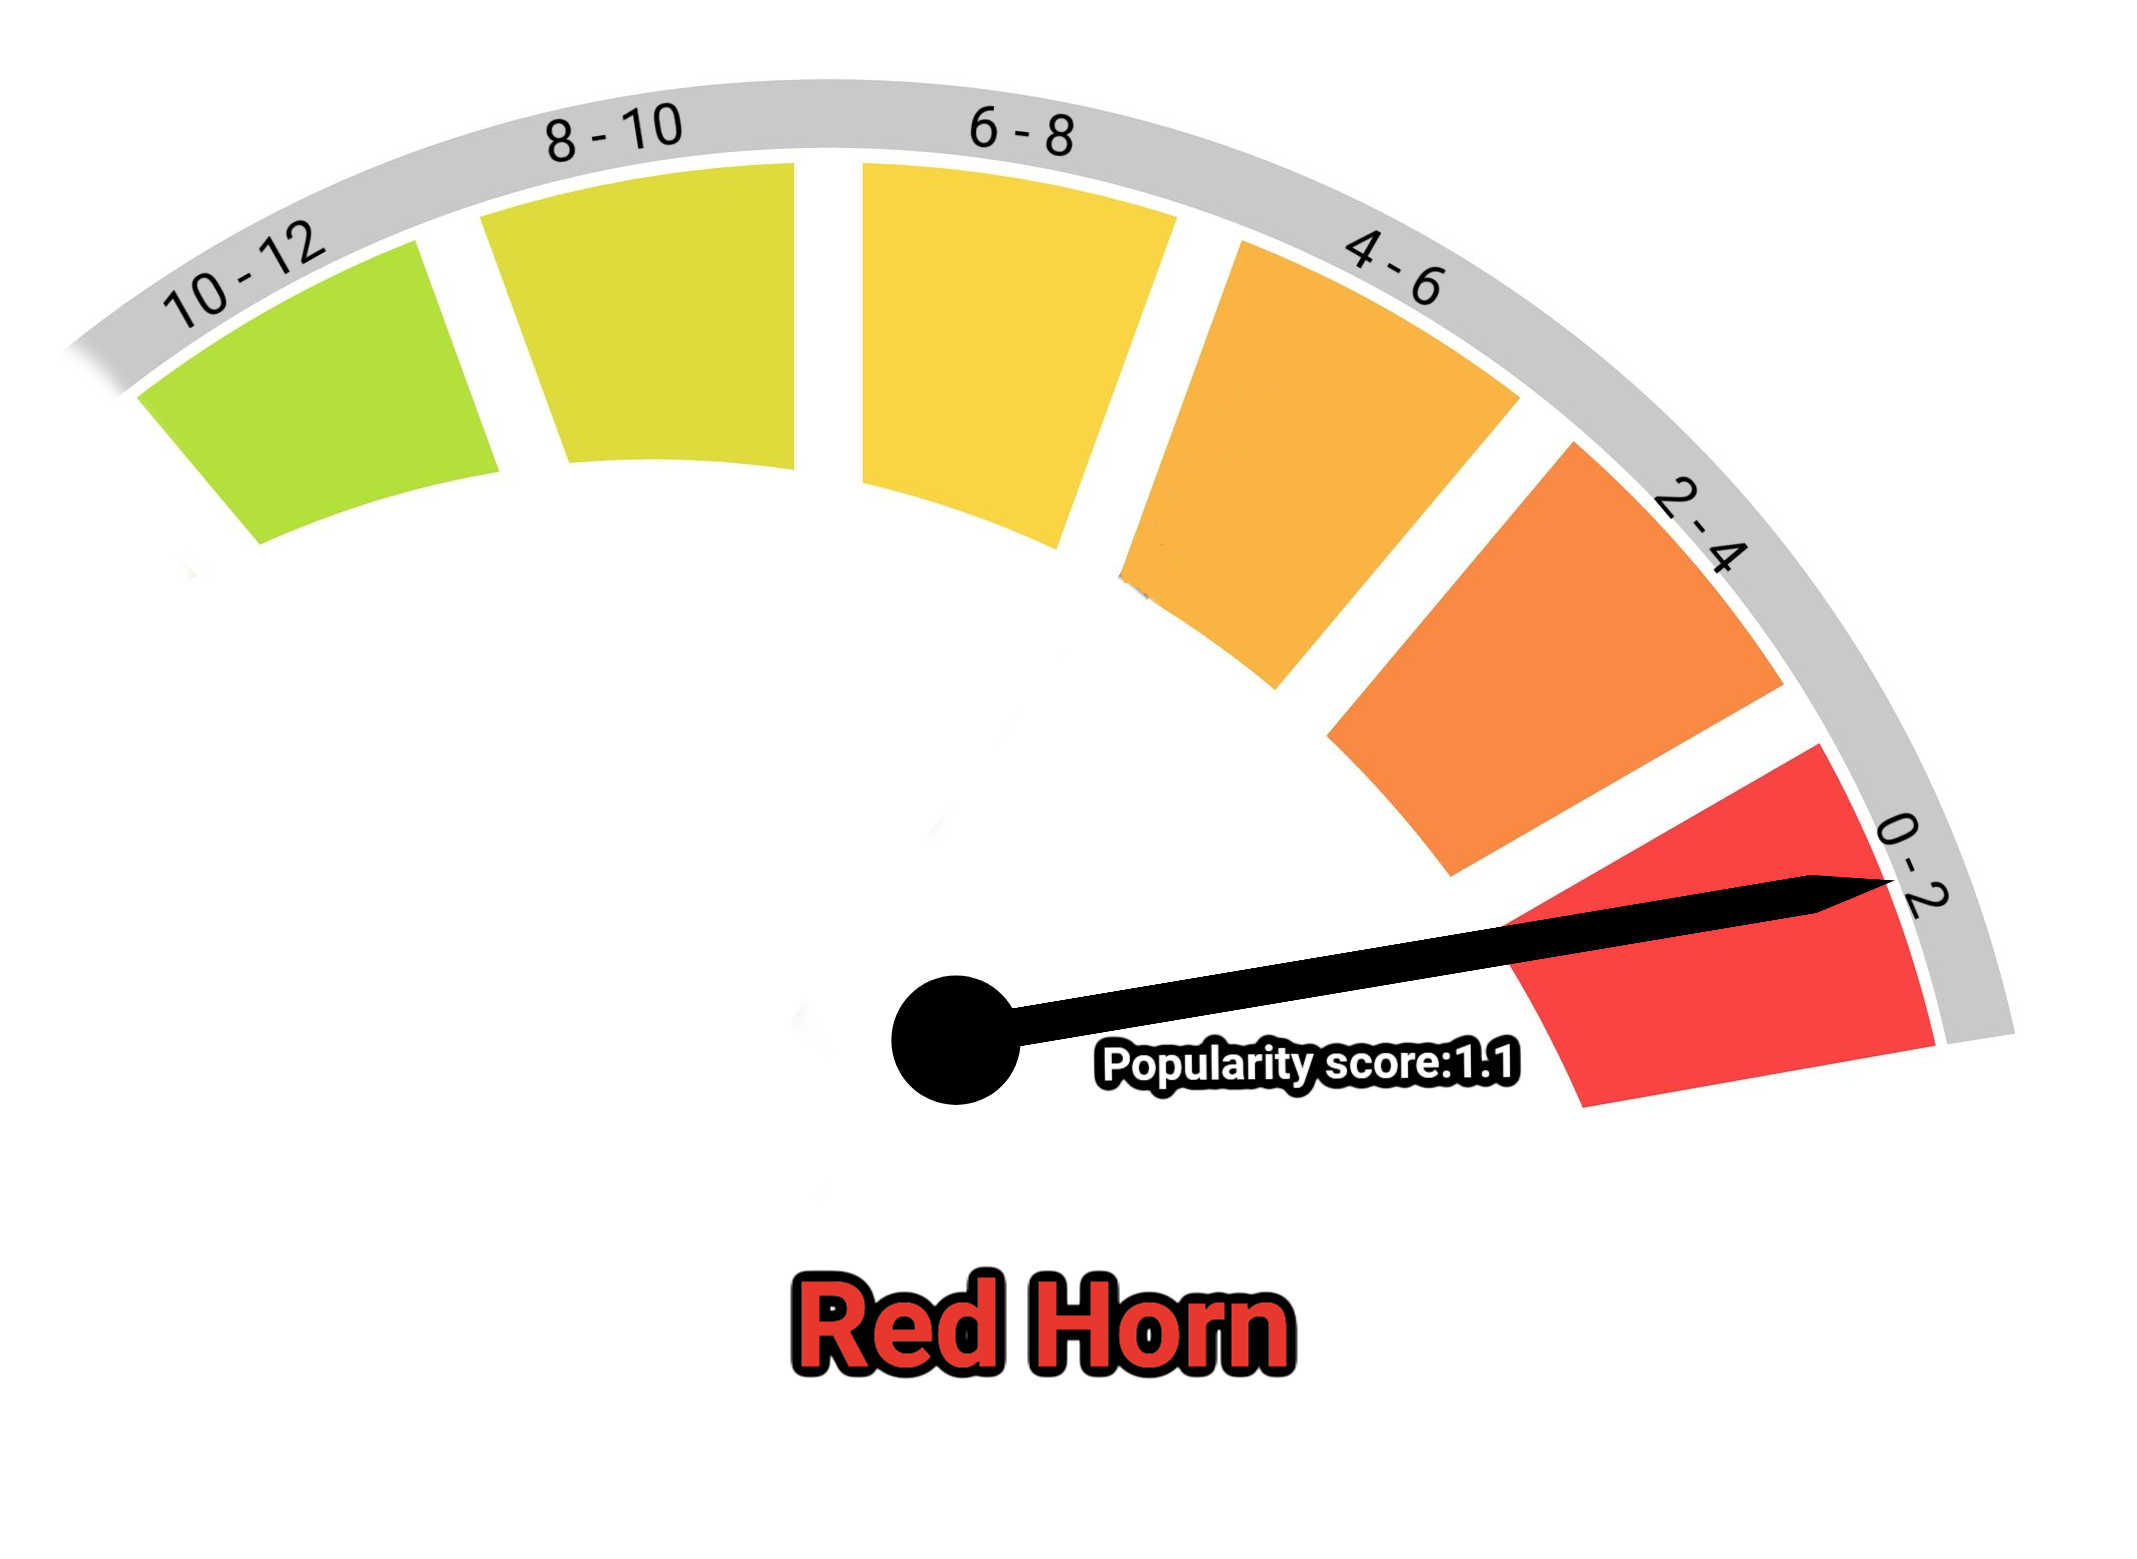 image of red horn kratom popularity score